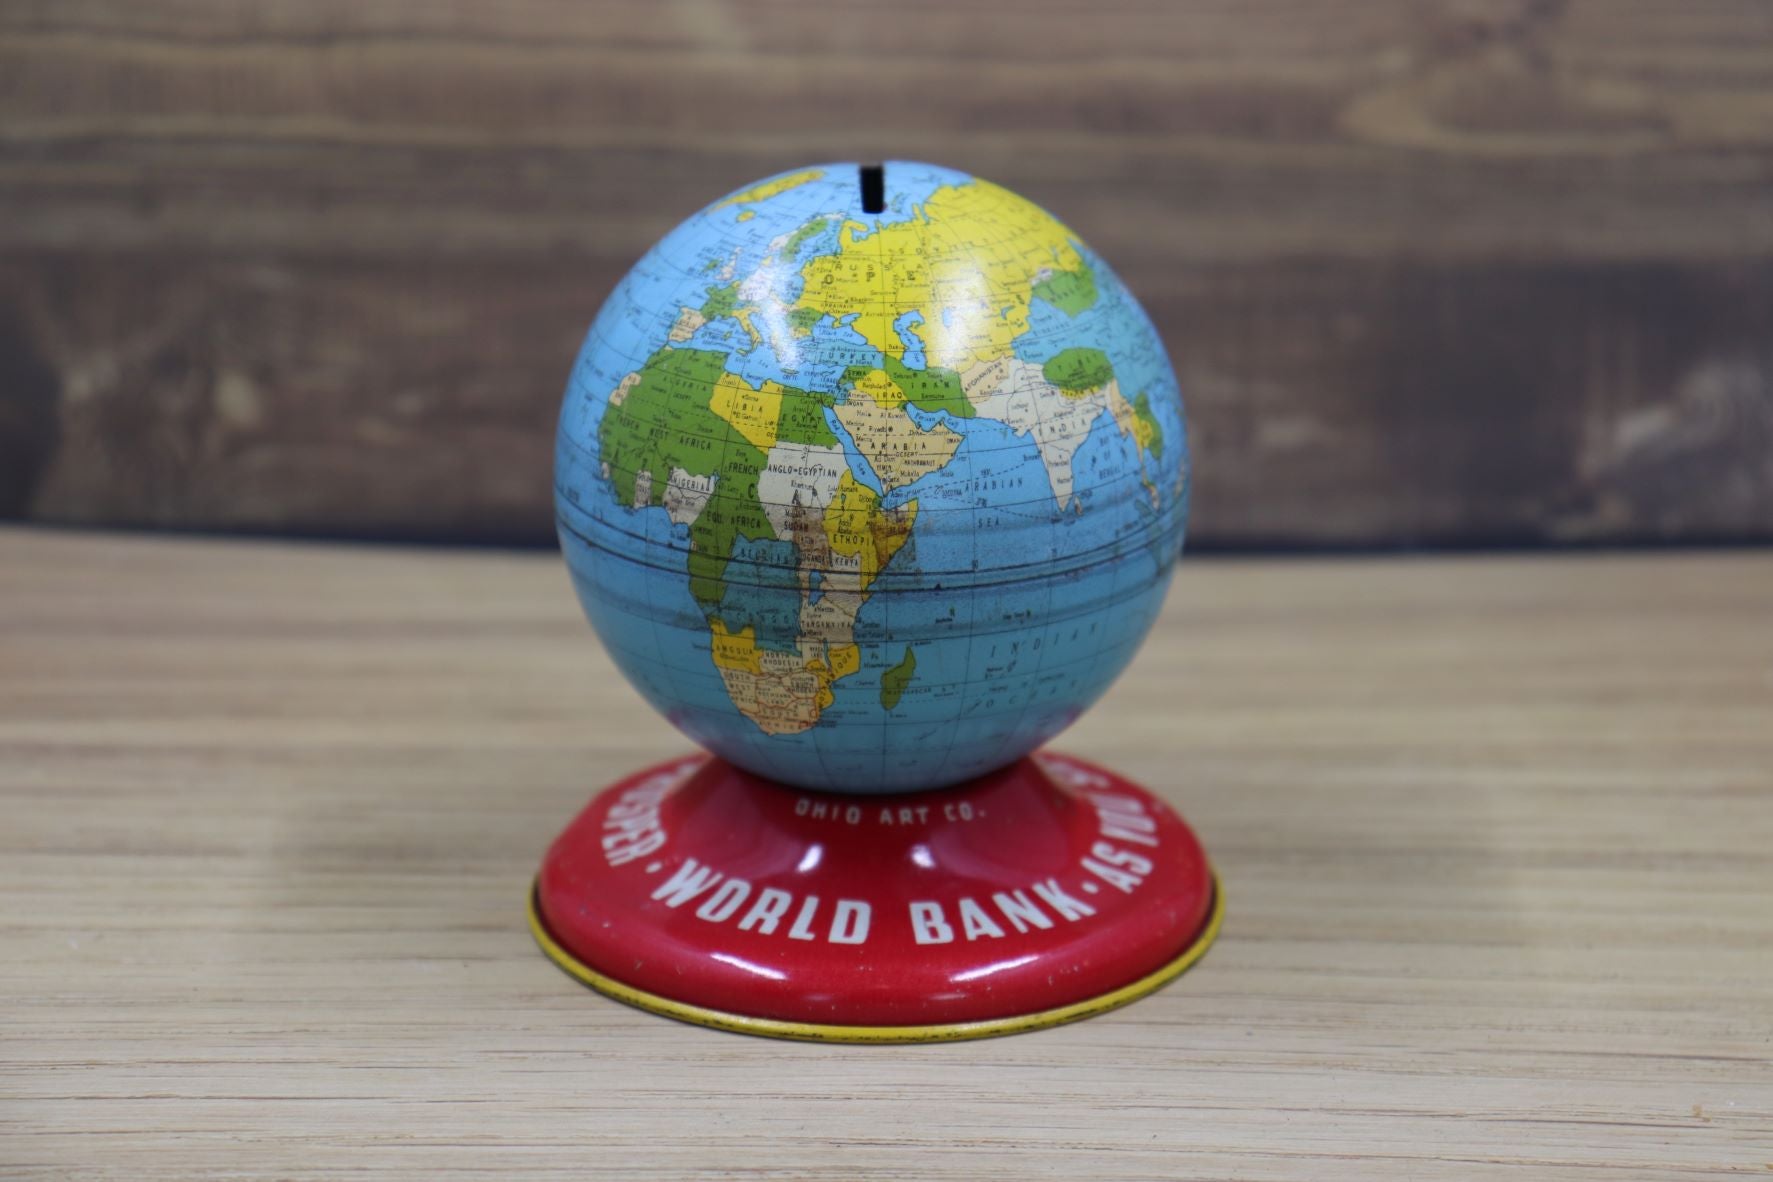 Vintage Tin Globe Bank - Ohio Art Co.